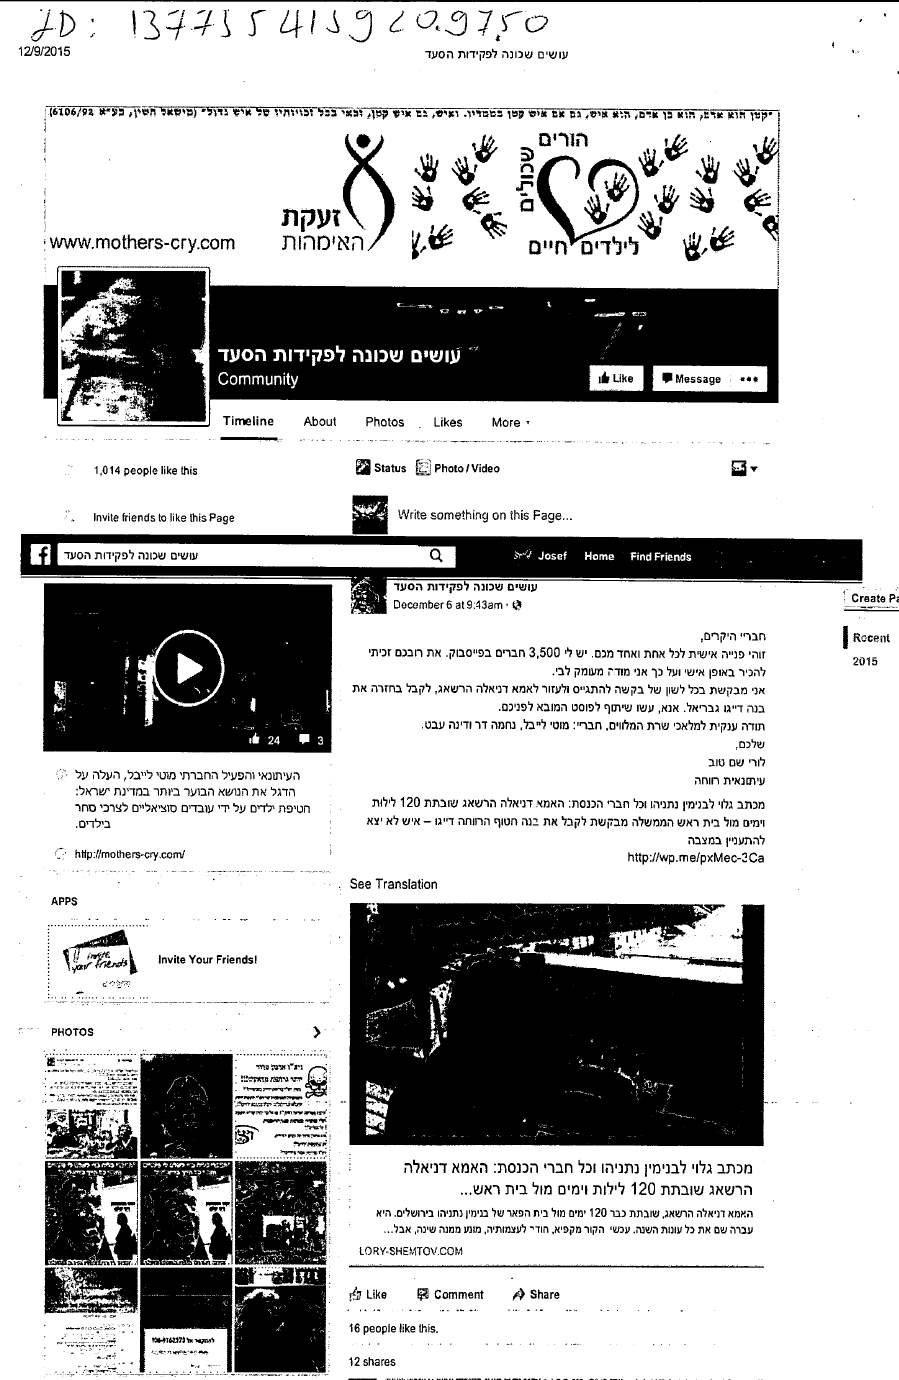 הפרסום שבגינו השופט ירון גת הוציא צו לגוגל לחשוף פרטי גולשת באינטרנט